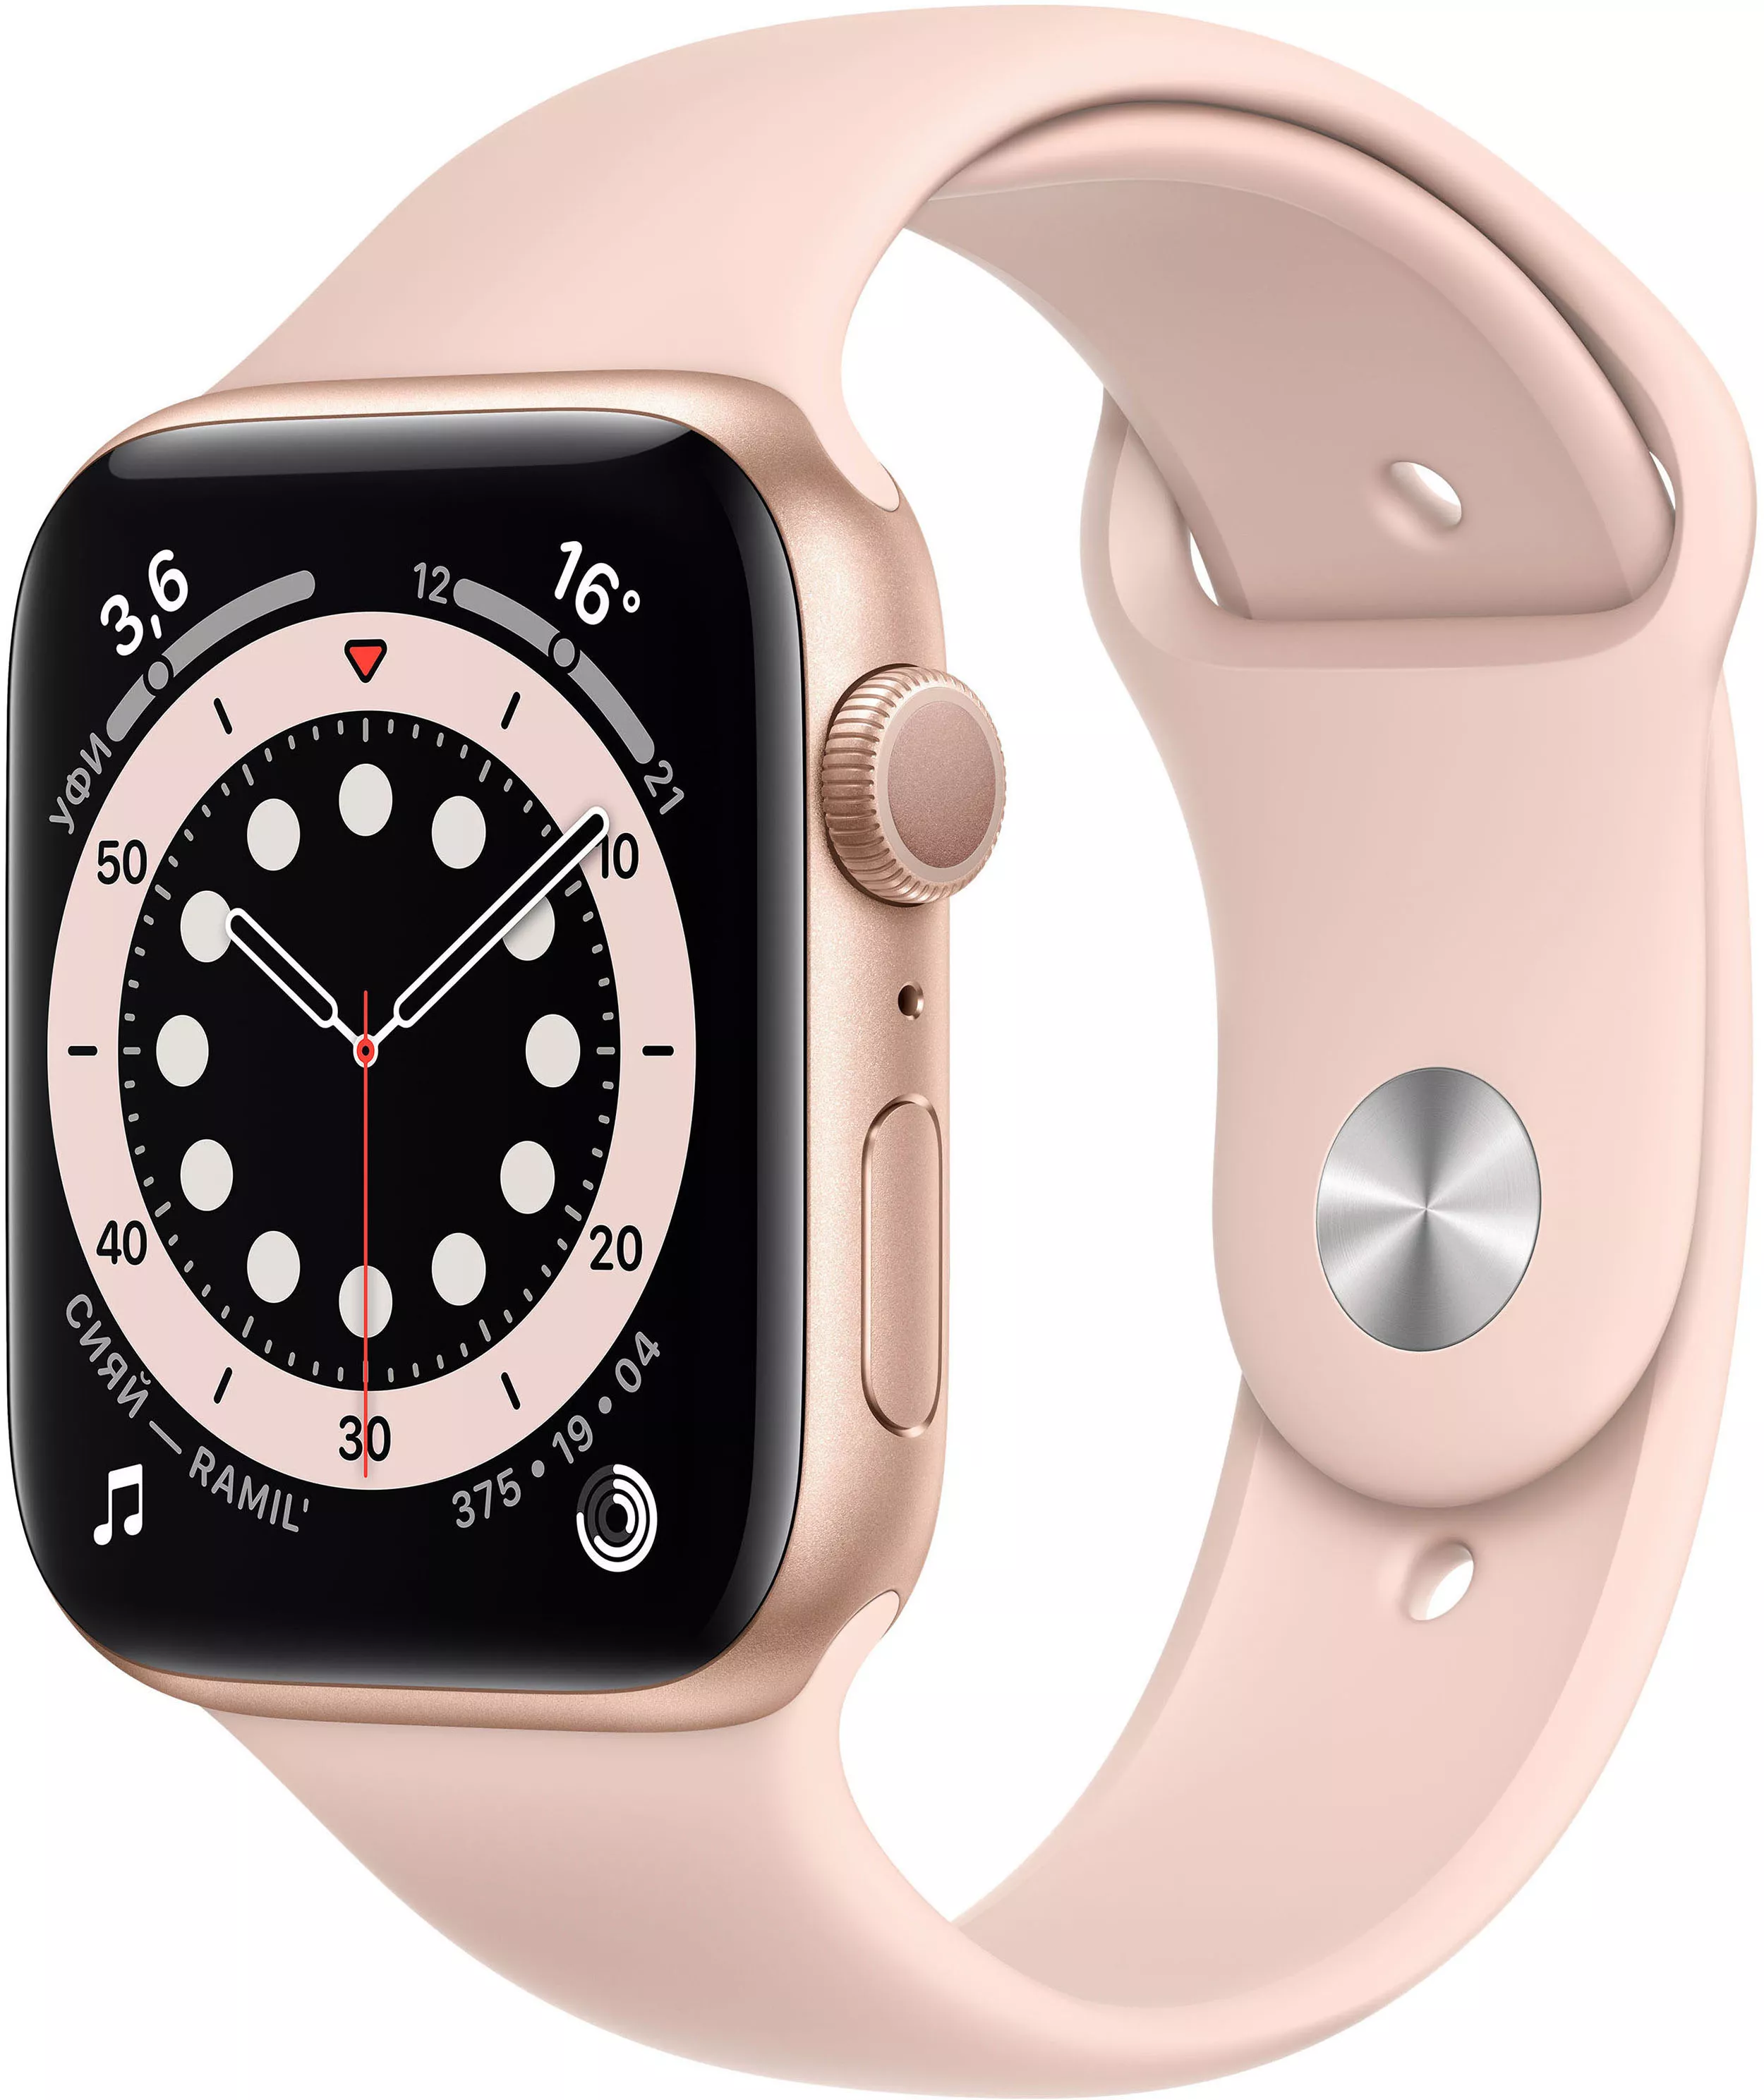 Apple Watch Series 6 44mm, золотистый алюминий, спортивный ремешок цвета «розовый песок». Вид 1